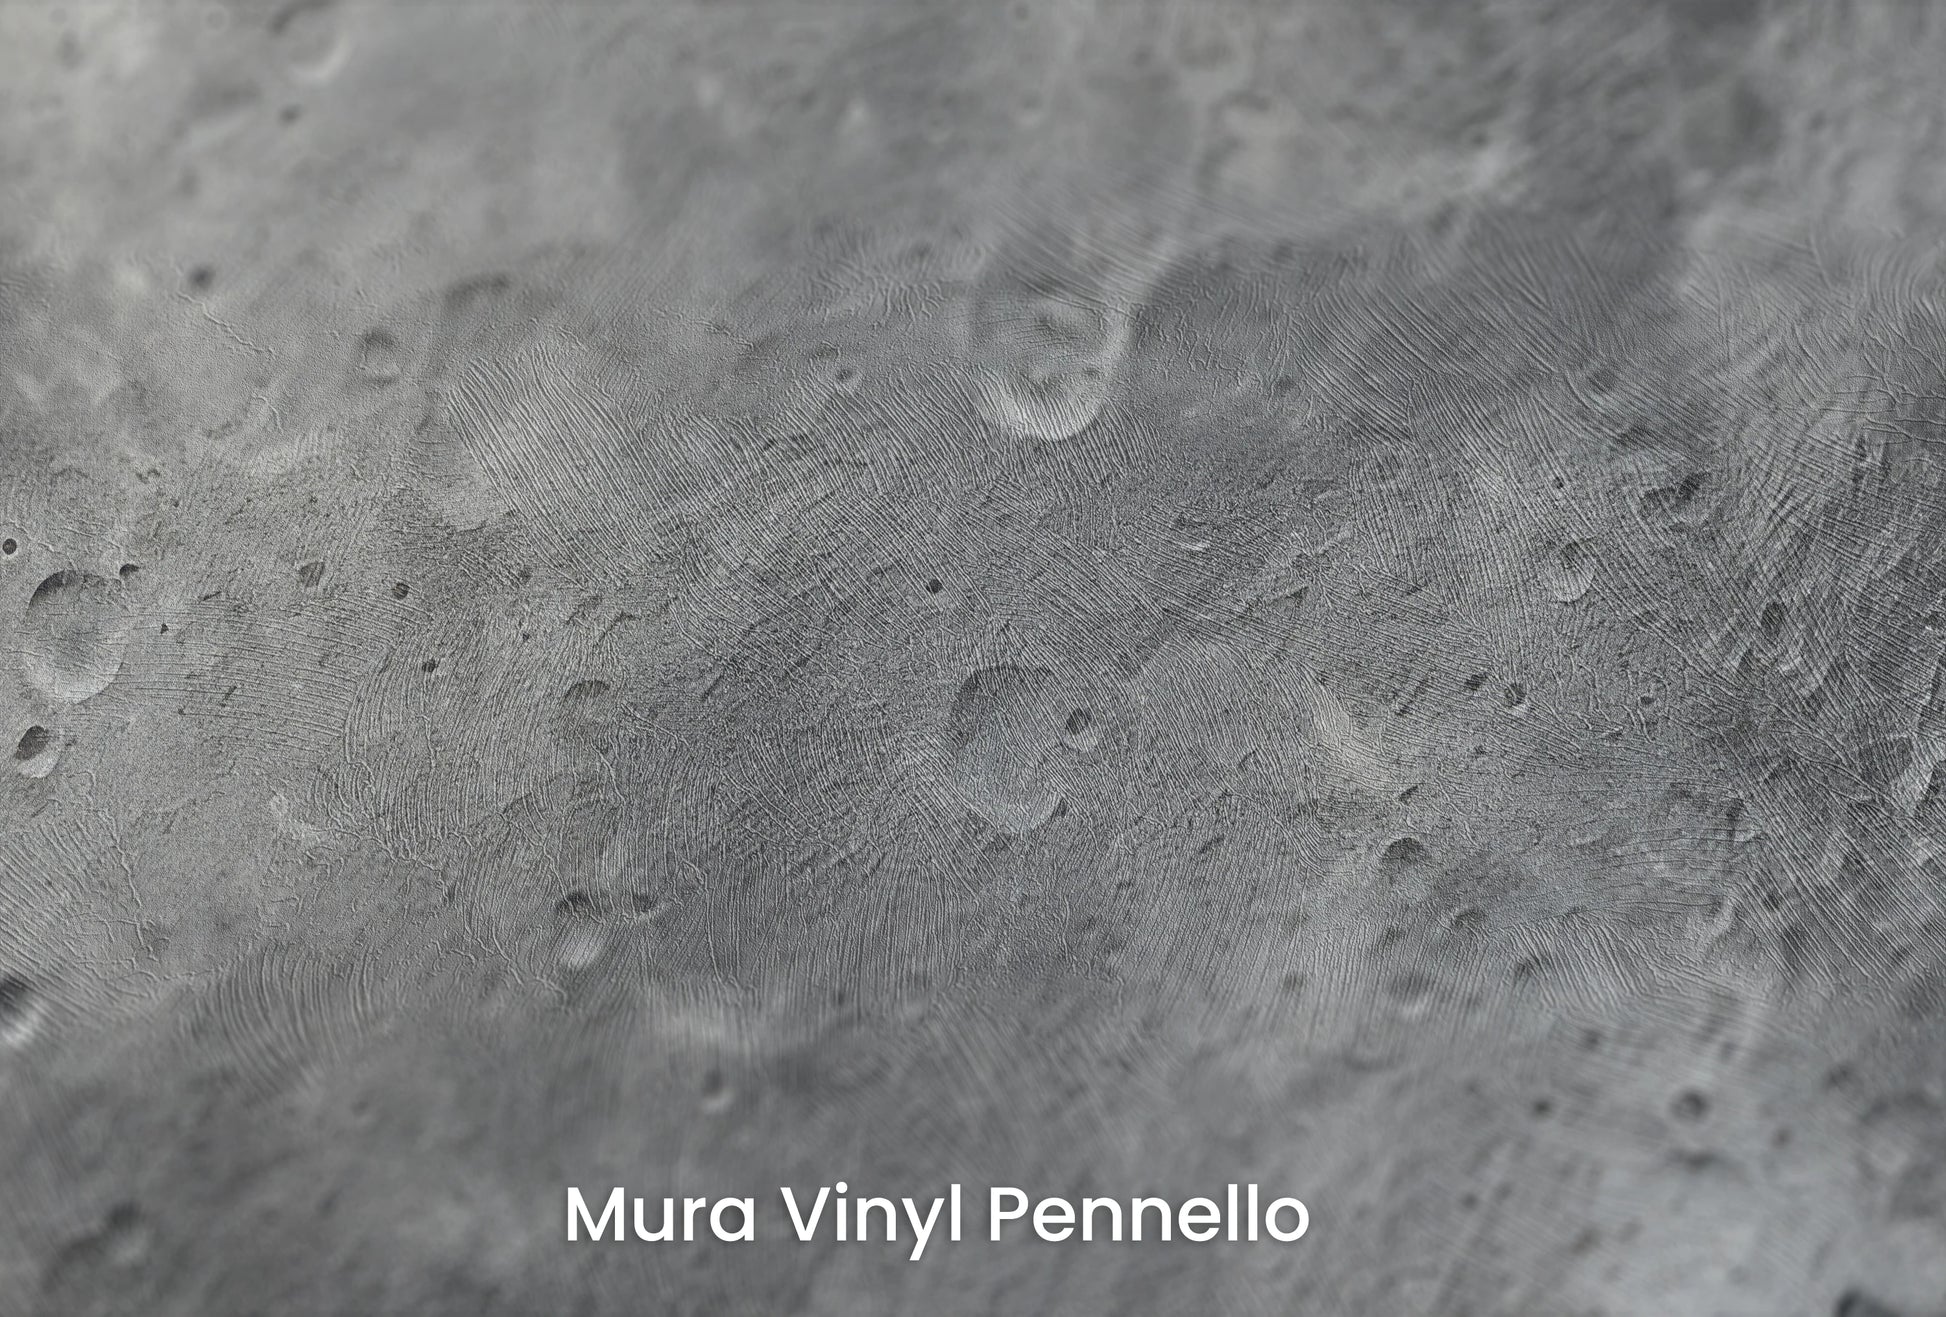 Zbliżenie na artystyczną fototapetę o nazwie Monochrome Moon na podłożu Mura Vinyl Pennello - faktura pociągnięć pędzla malarskiego.